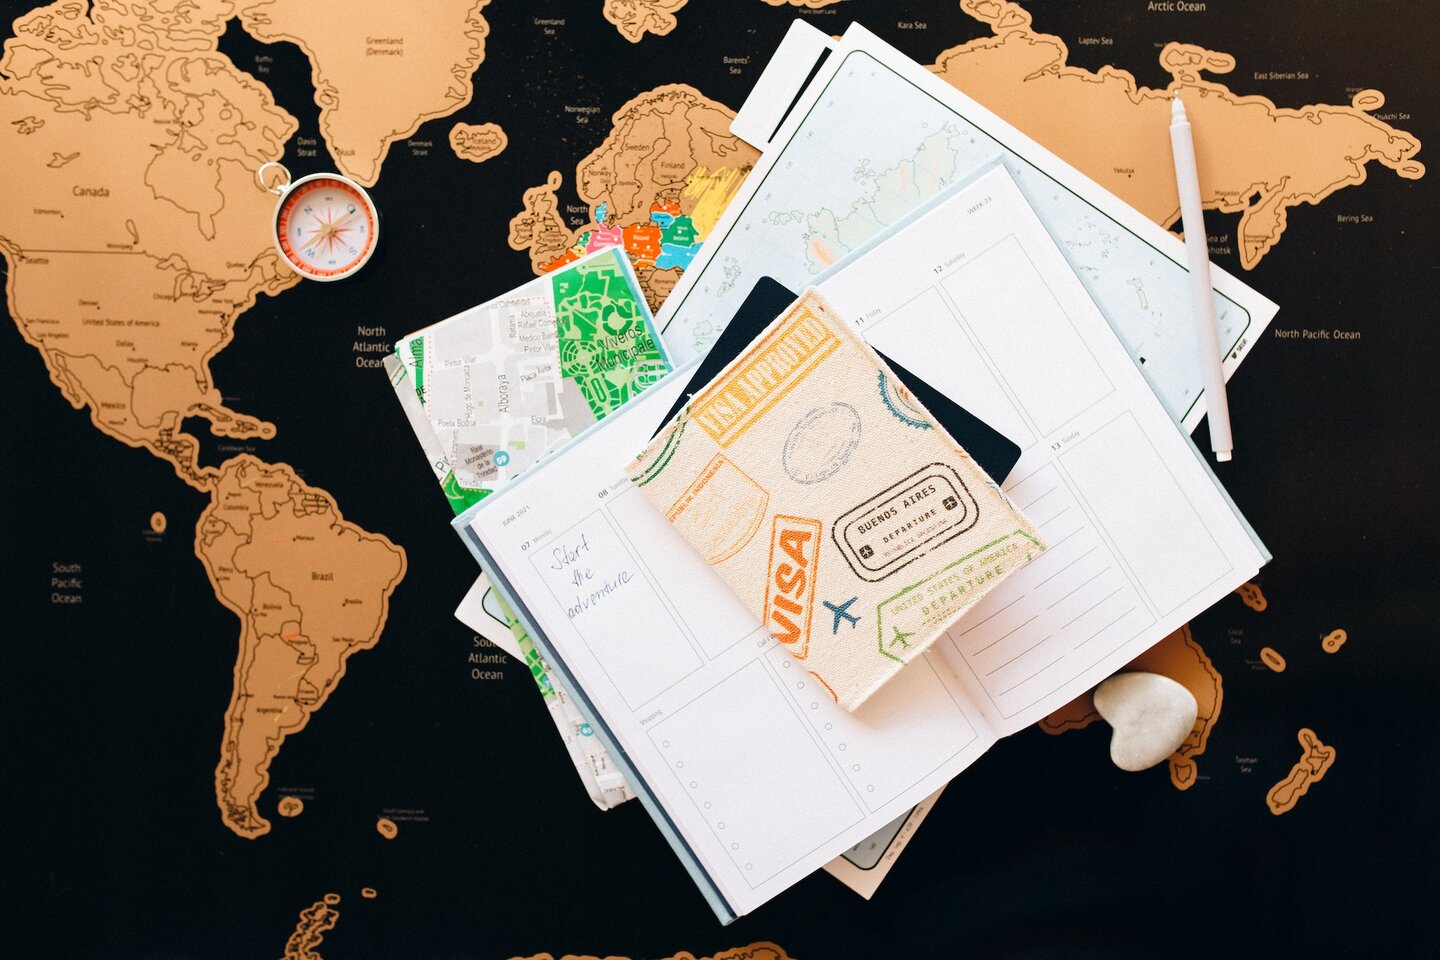 документы, компас, ручка и безделушка в форме сердца лежат на карте мира